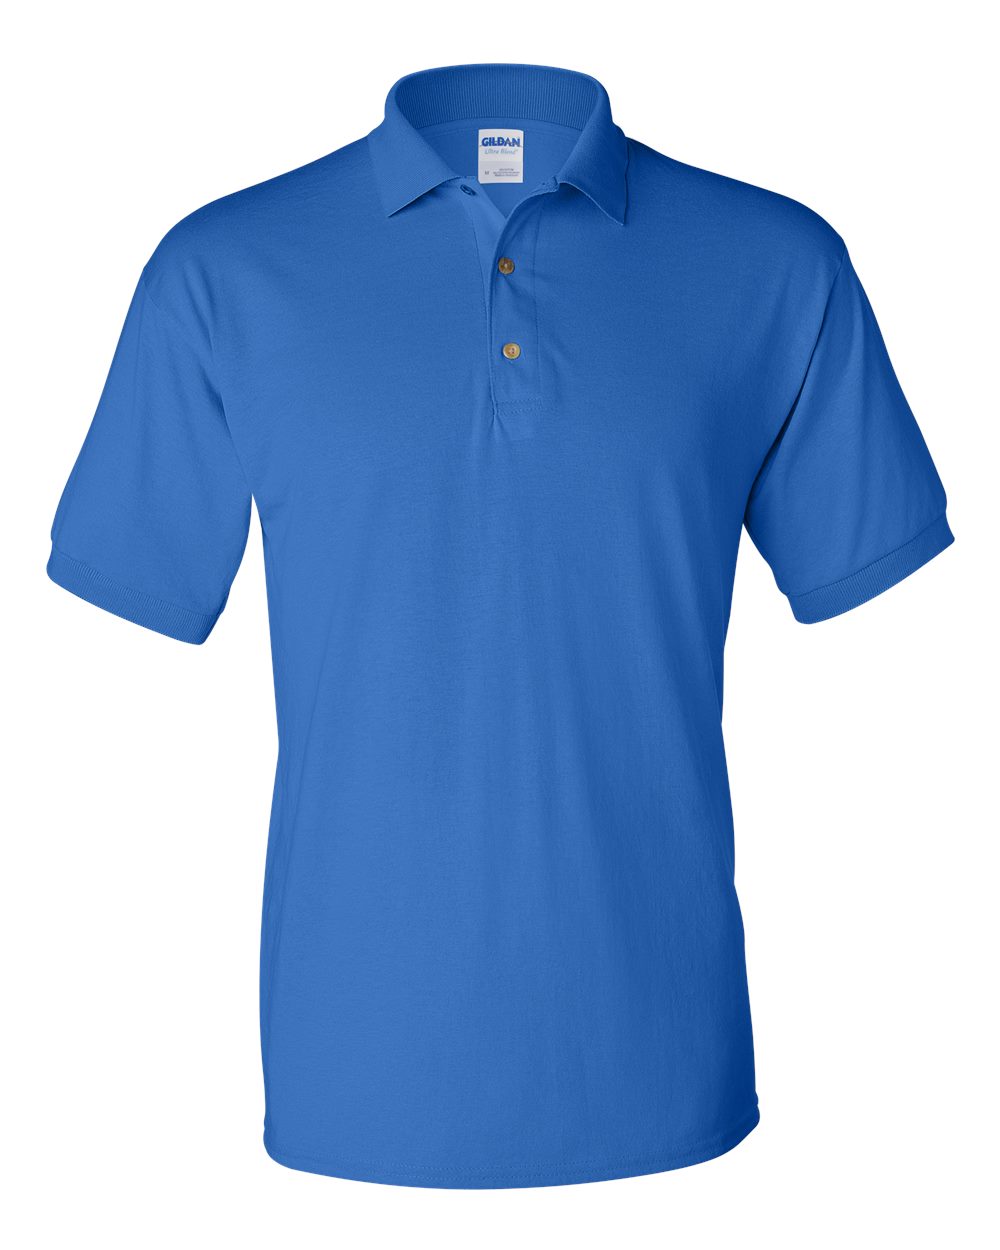 Gildan 5.6 oz DryBlend 50/50 Jersey Polo Sport Shirt 8800